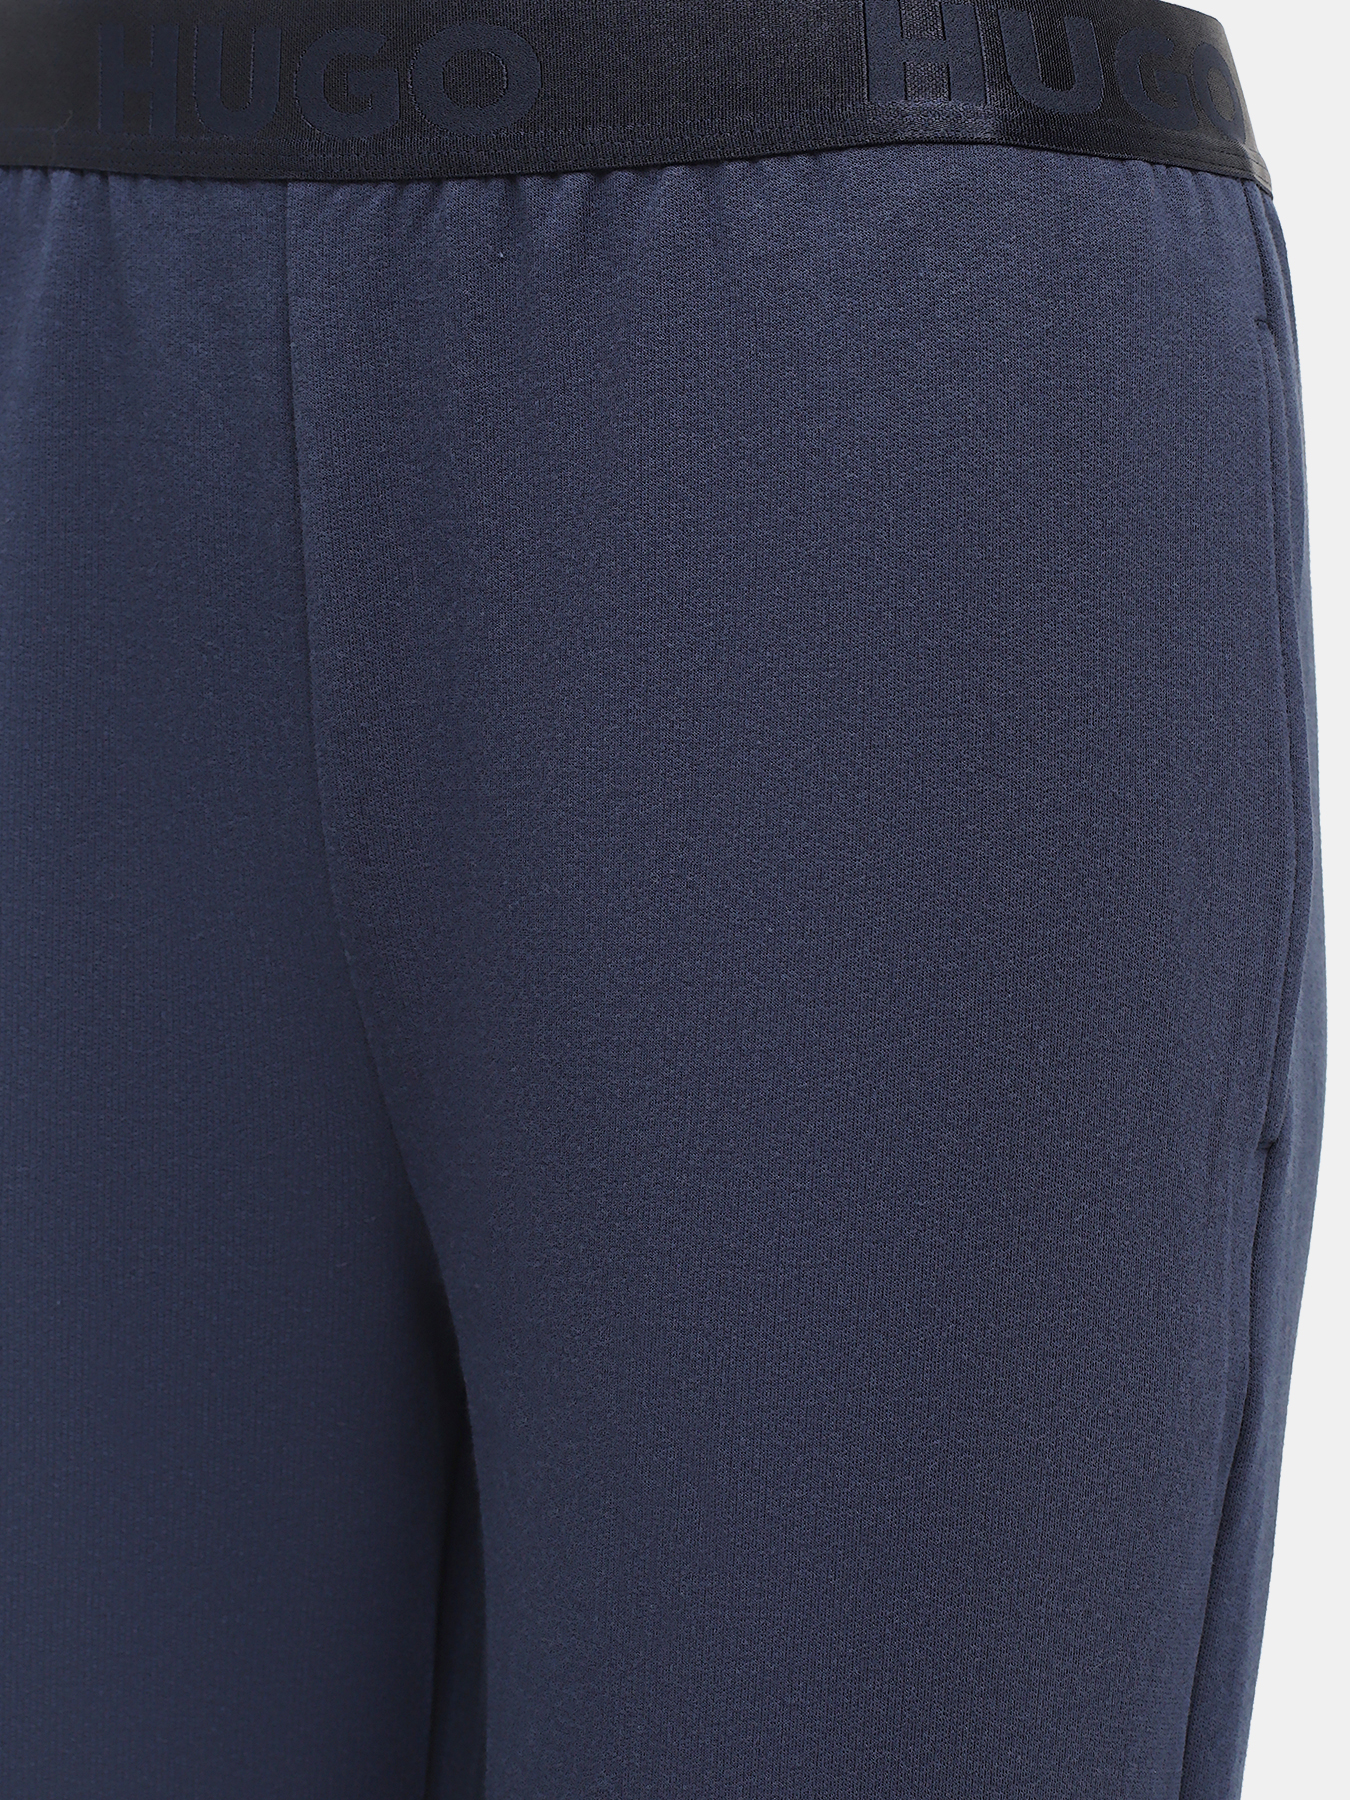 Спортивные брюки Sporty HUGO 427840-043, цвет темно-синий, размер 44-46 - фото 2